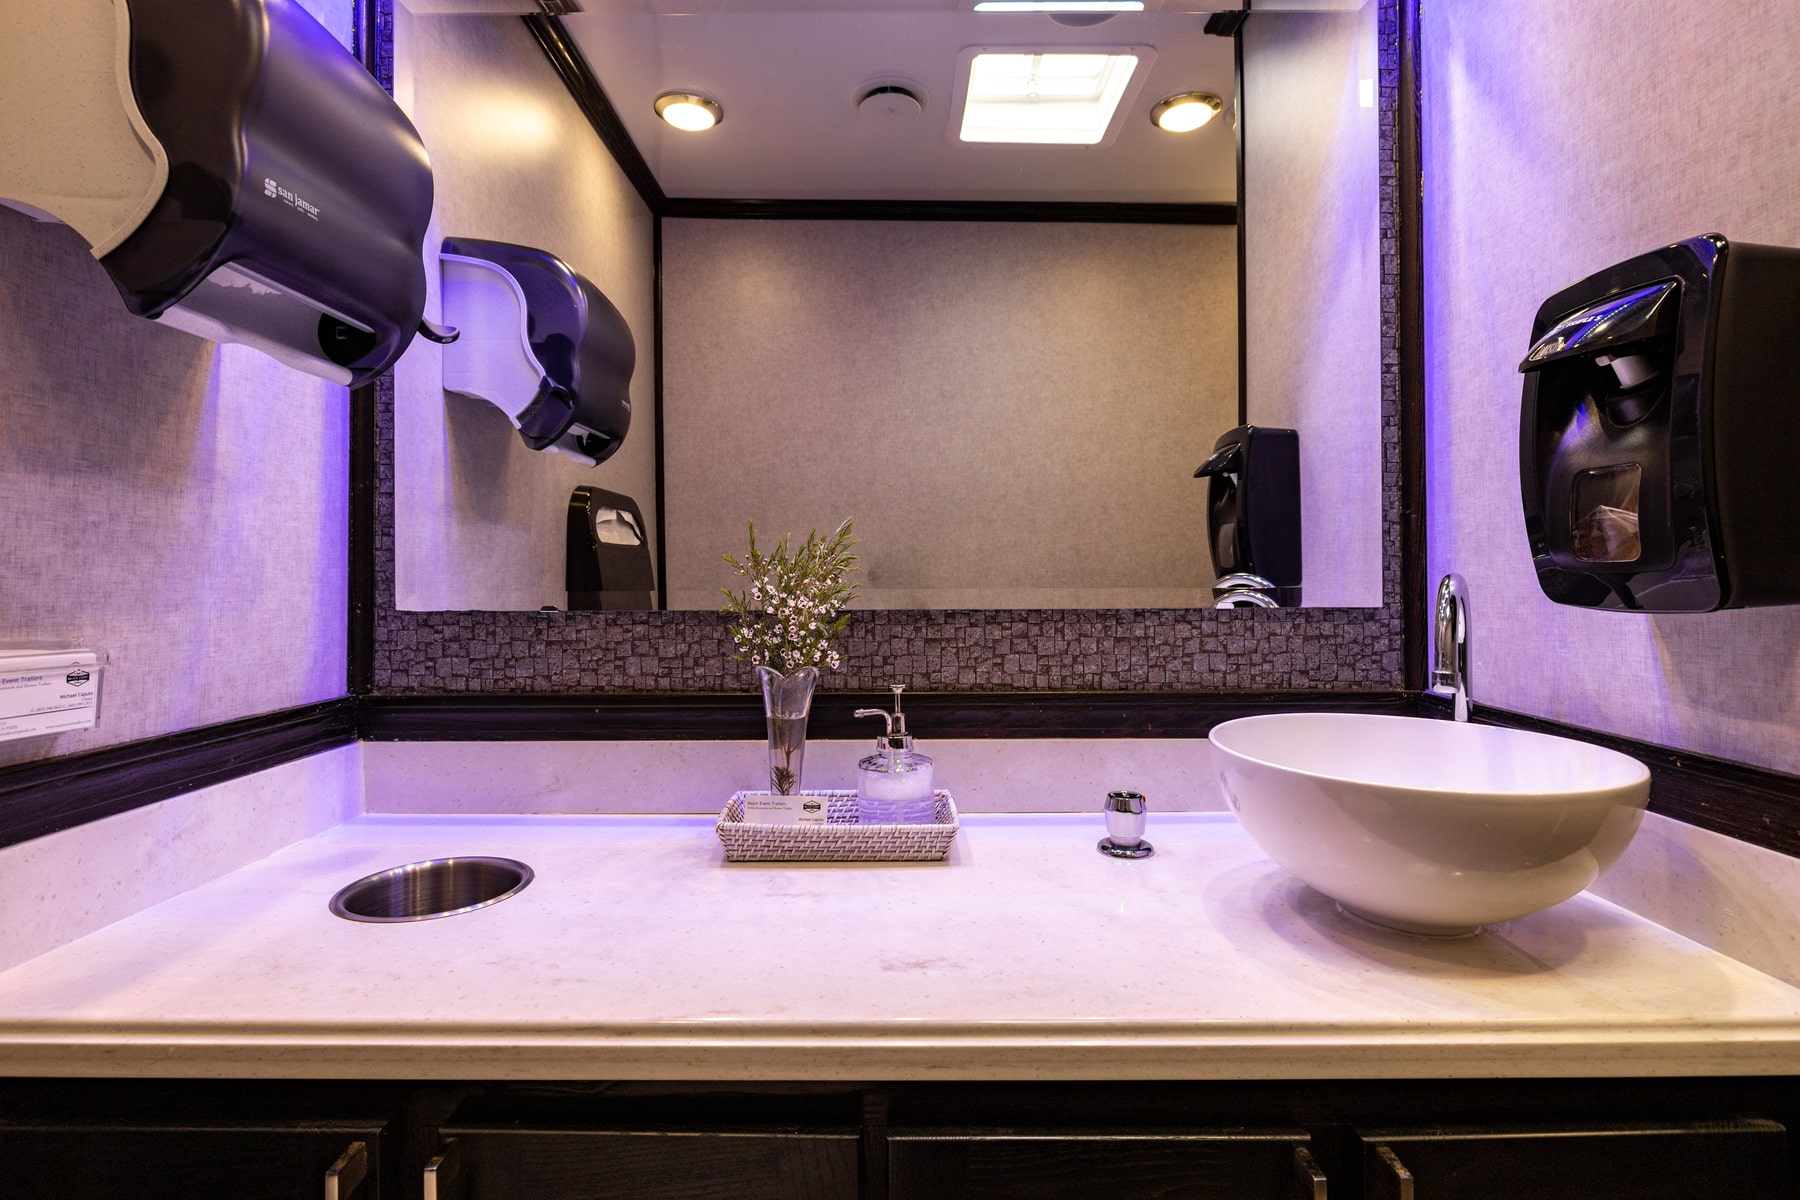 5-Station Luxury Restroom Trailer Rental – Interior View 3